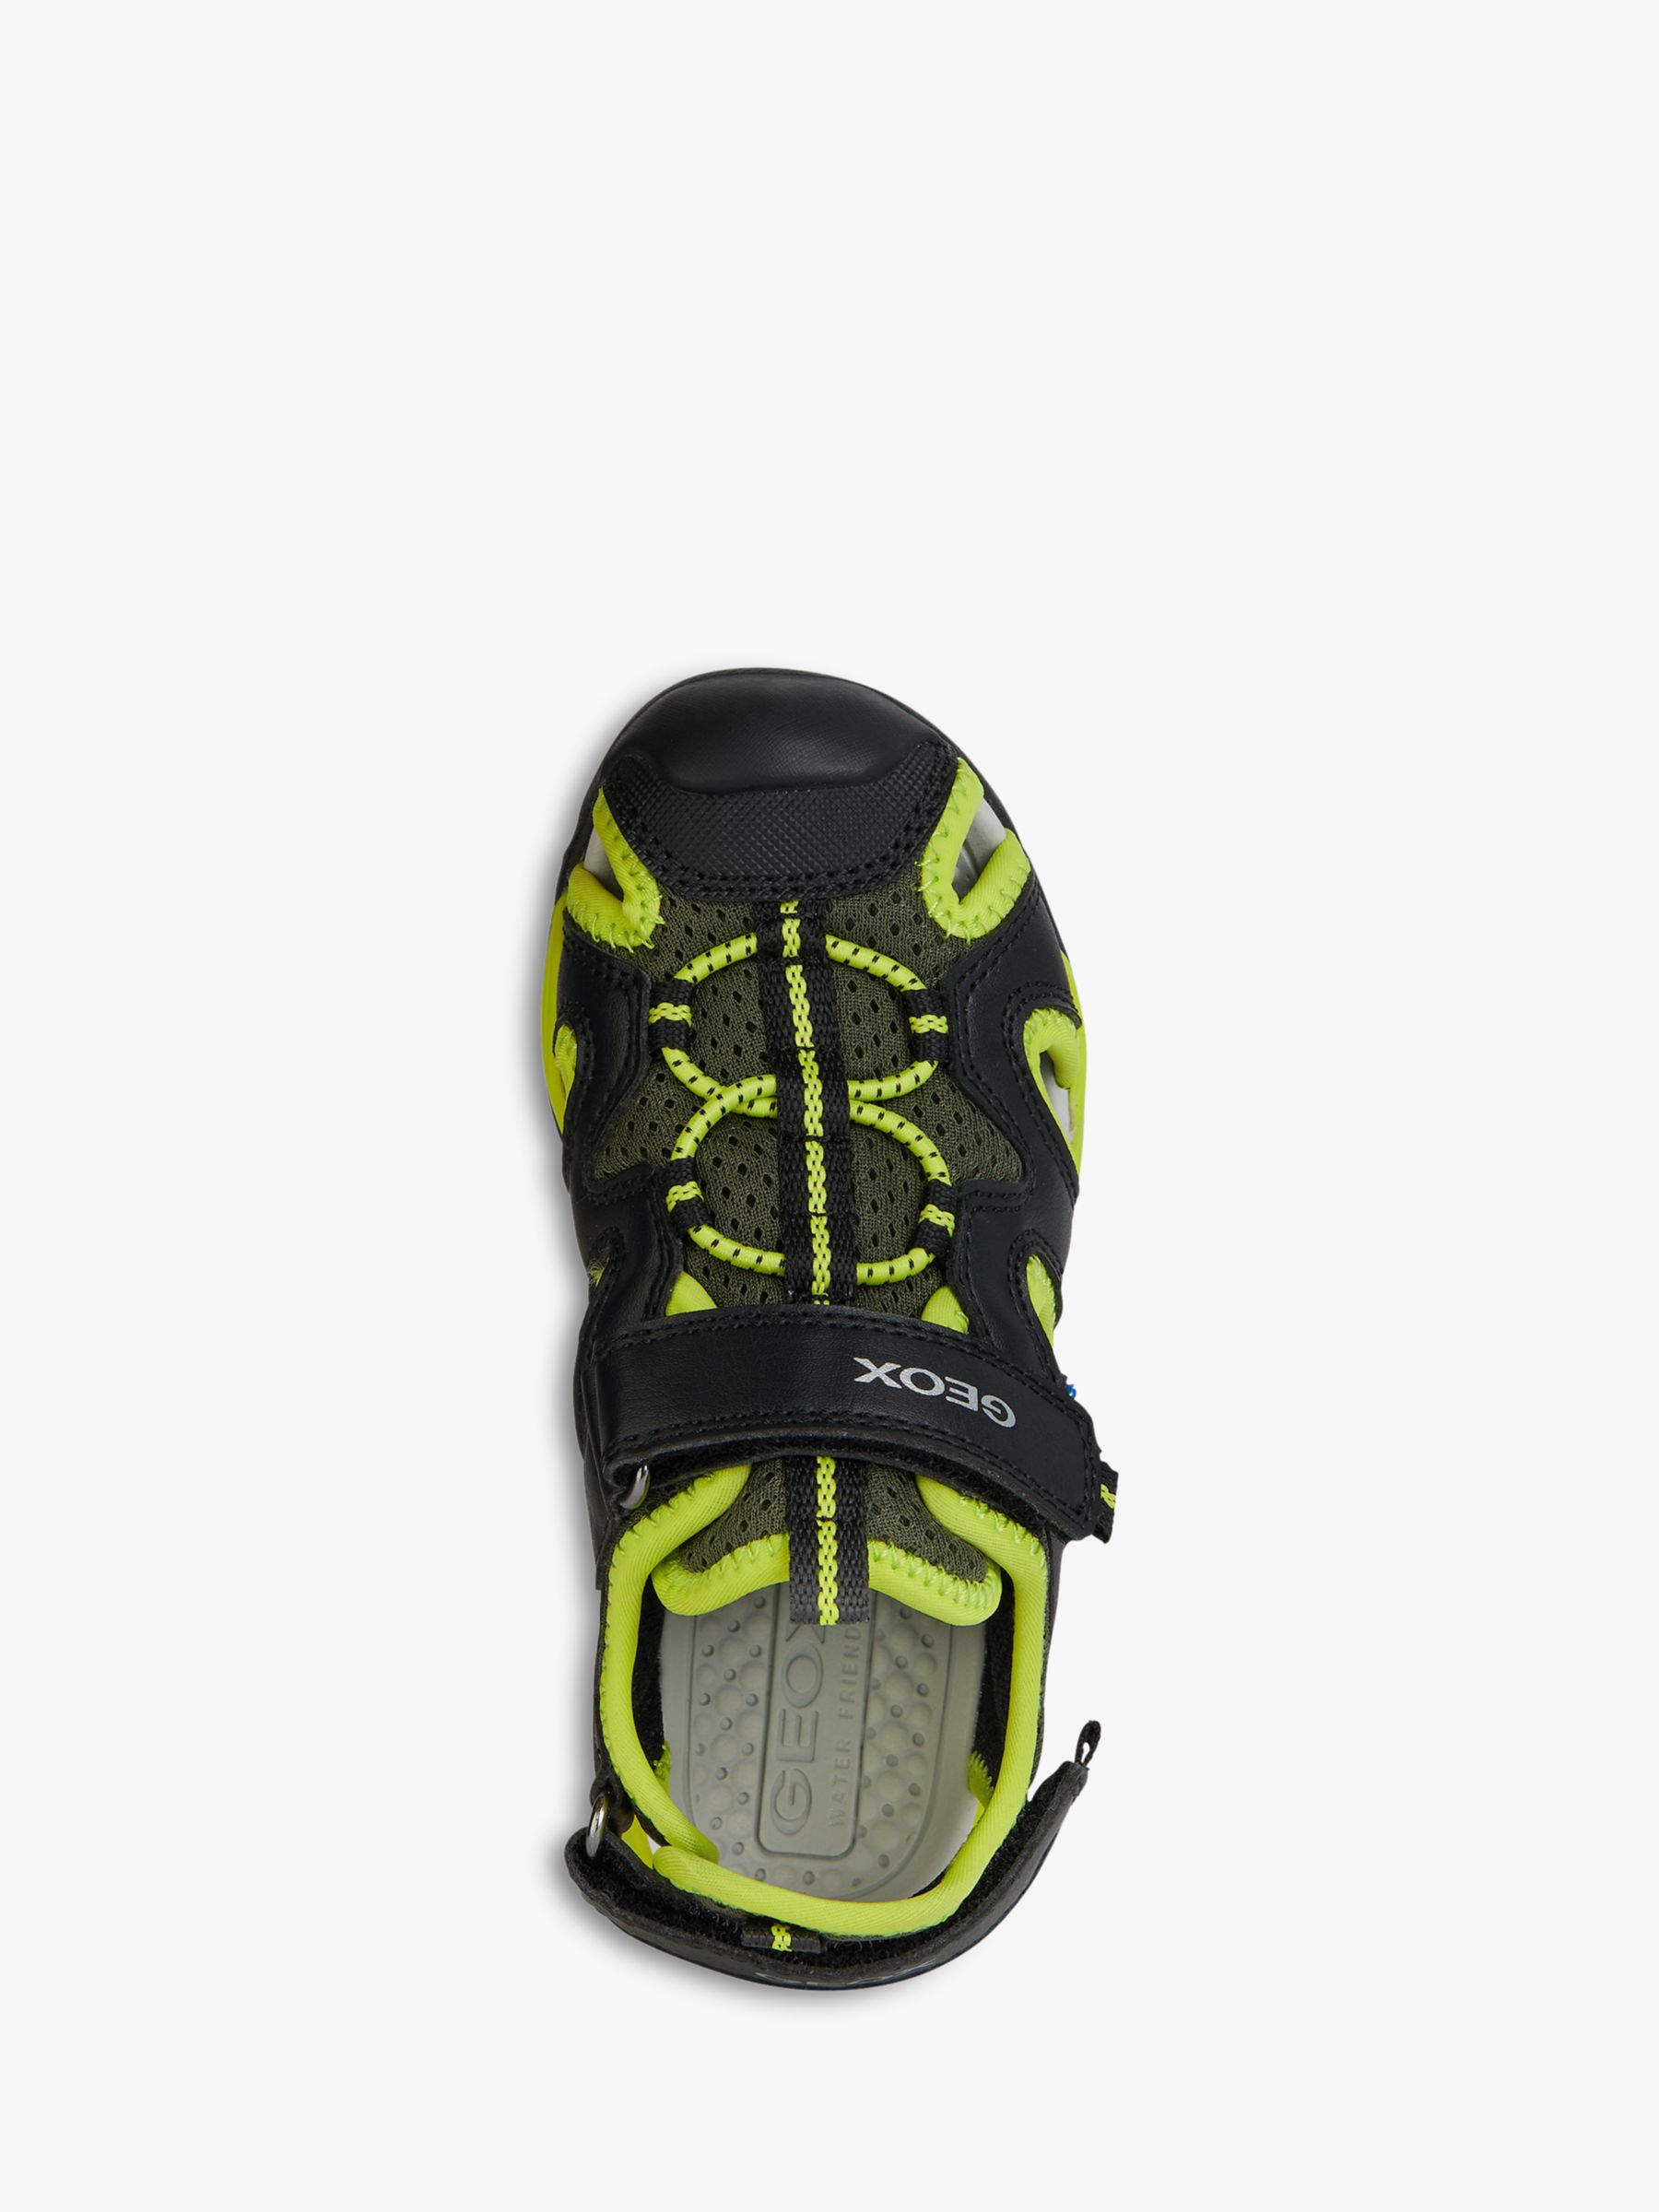 Geox Borealis Closed Toe Sandals, Black/Lime, EU31